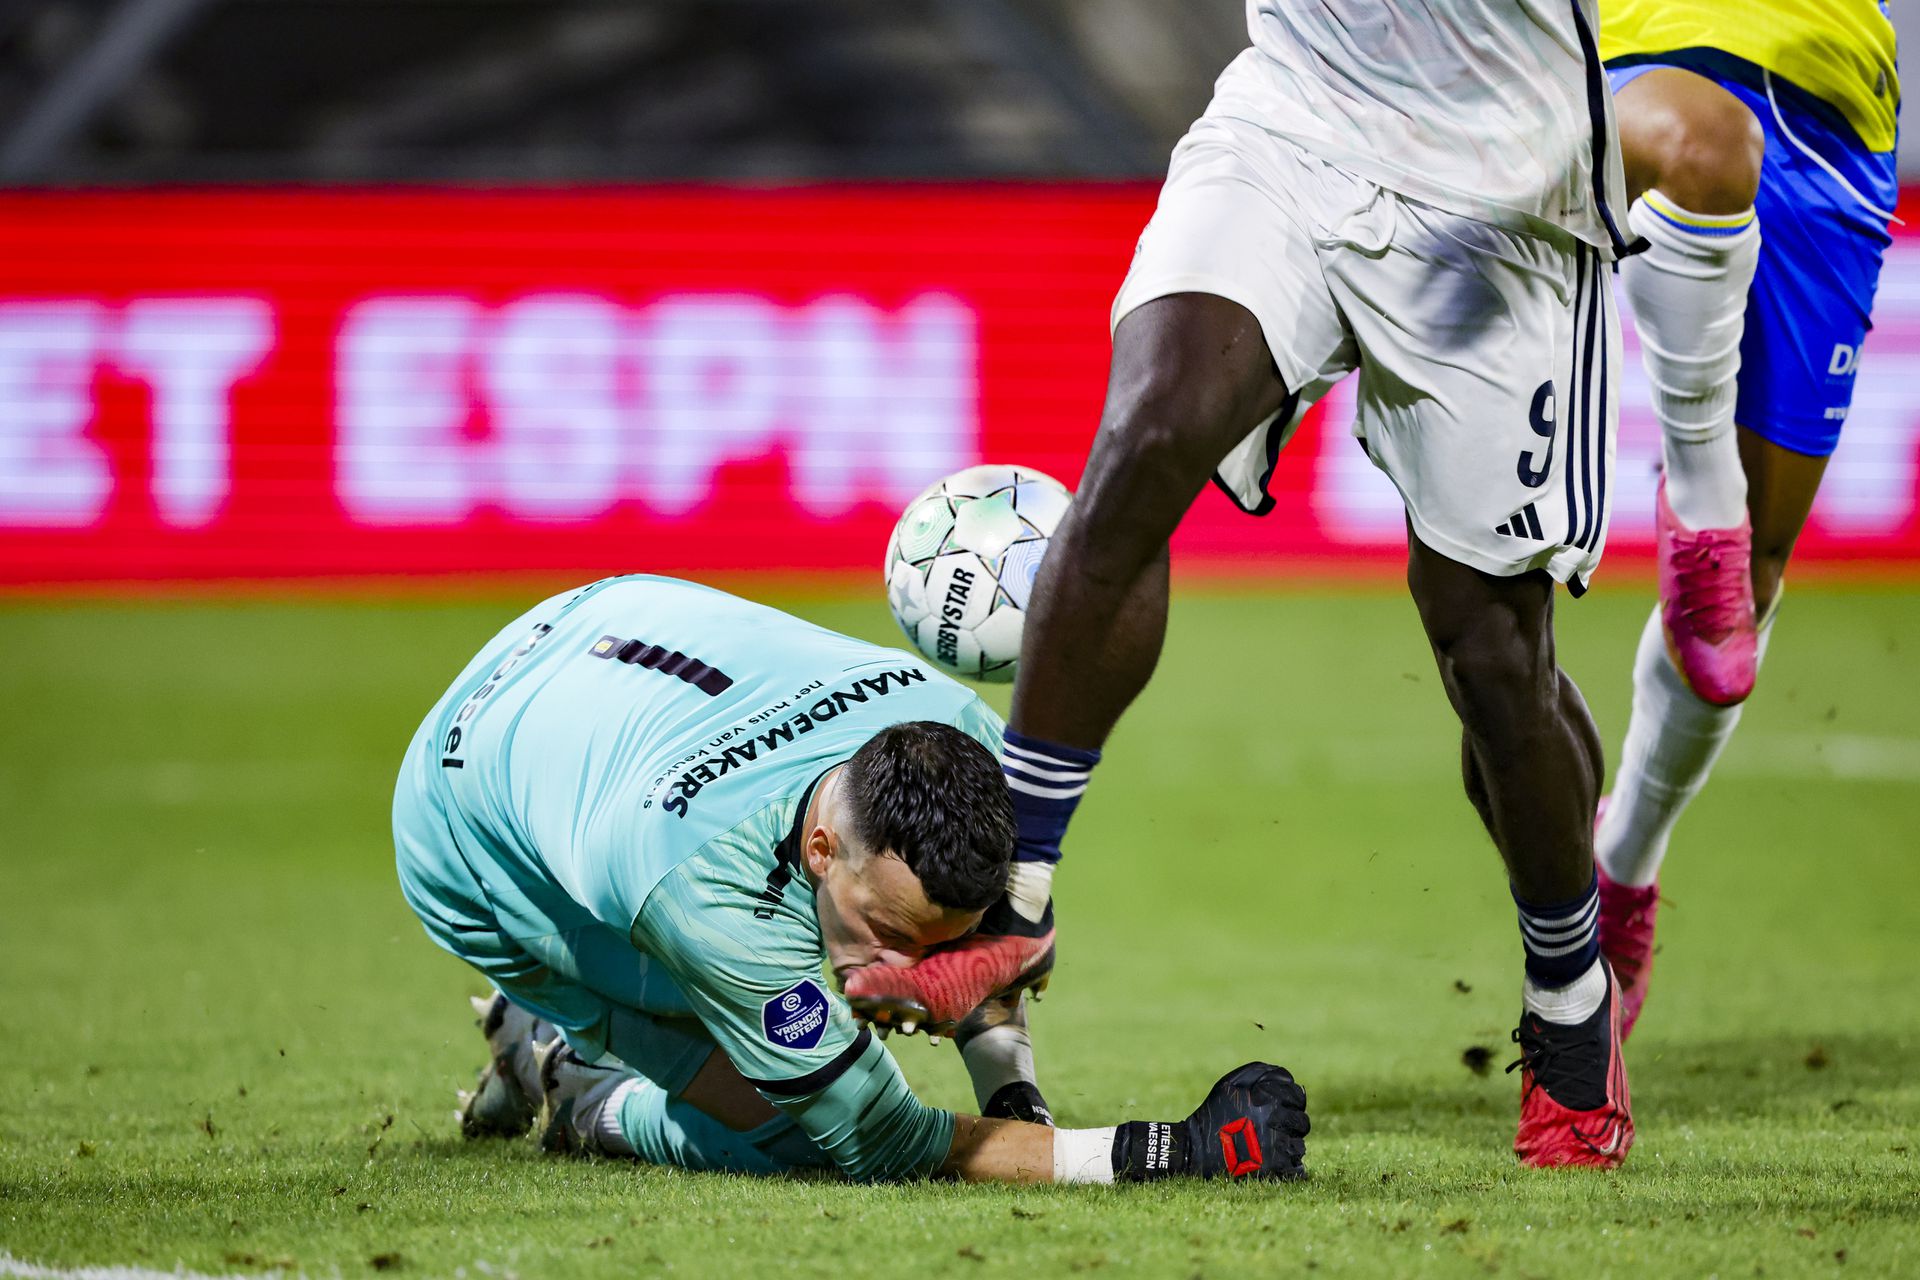 Olyan szerencsétlenül ütközött az Ajax csatárával, Brian Brobbeyvel, hogy a fejét ért ütés miatt elájult, lenyelte a nyelvét és újra kellett éleszteni a pályán /Fotó: Getty Images